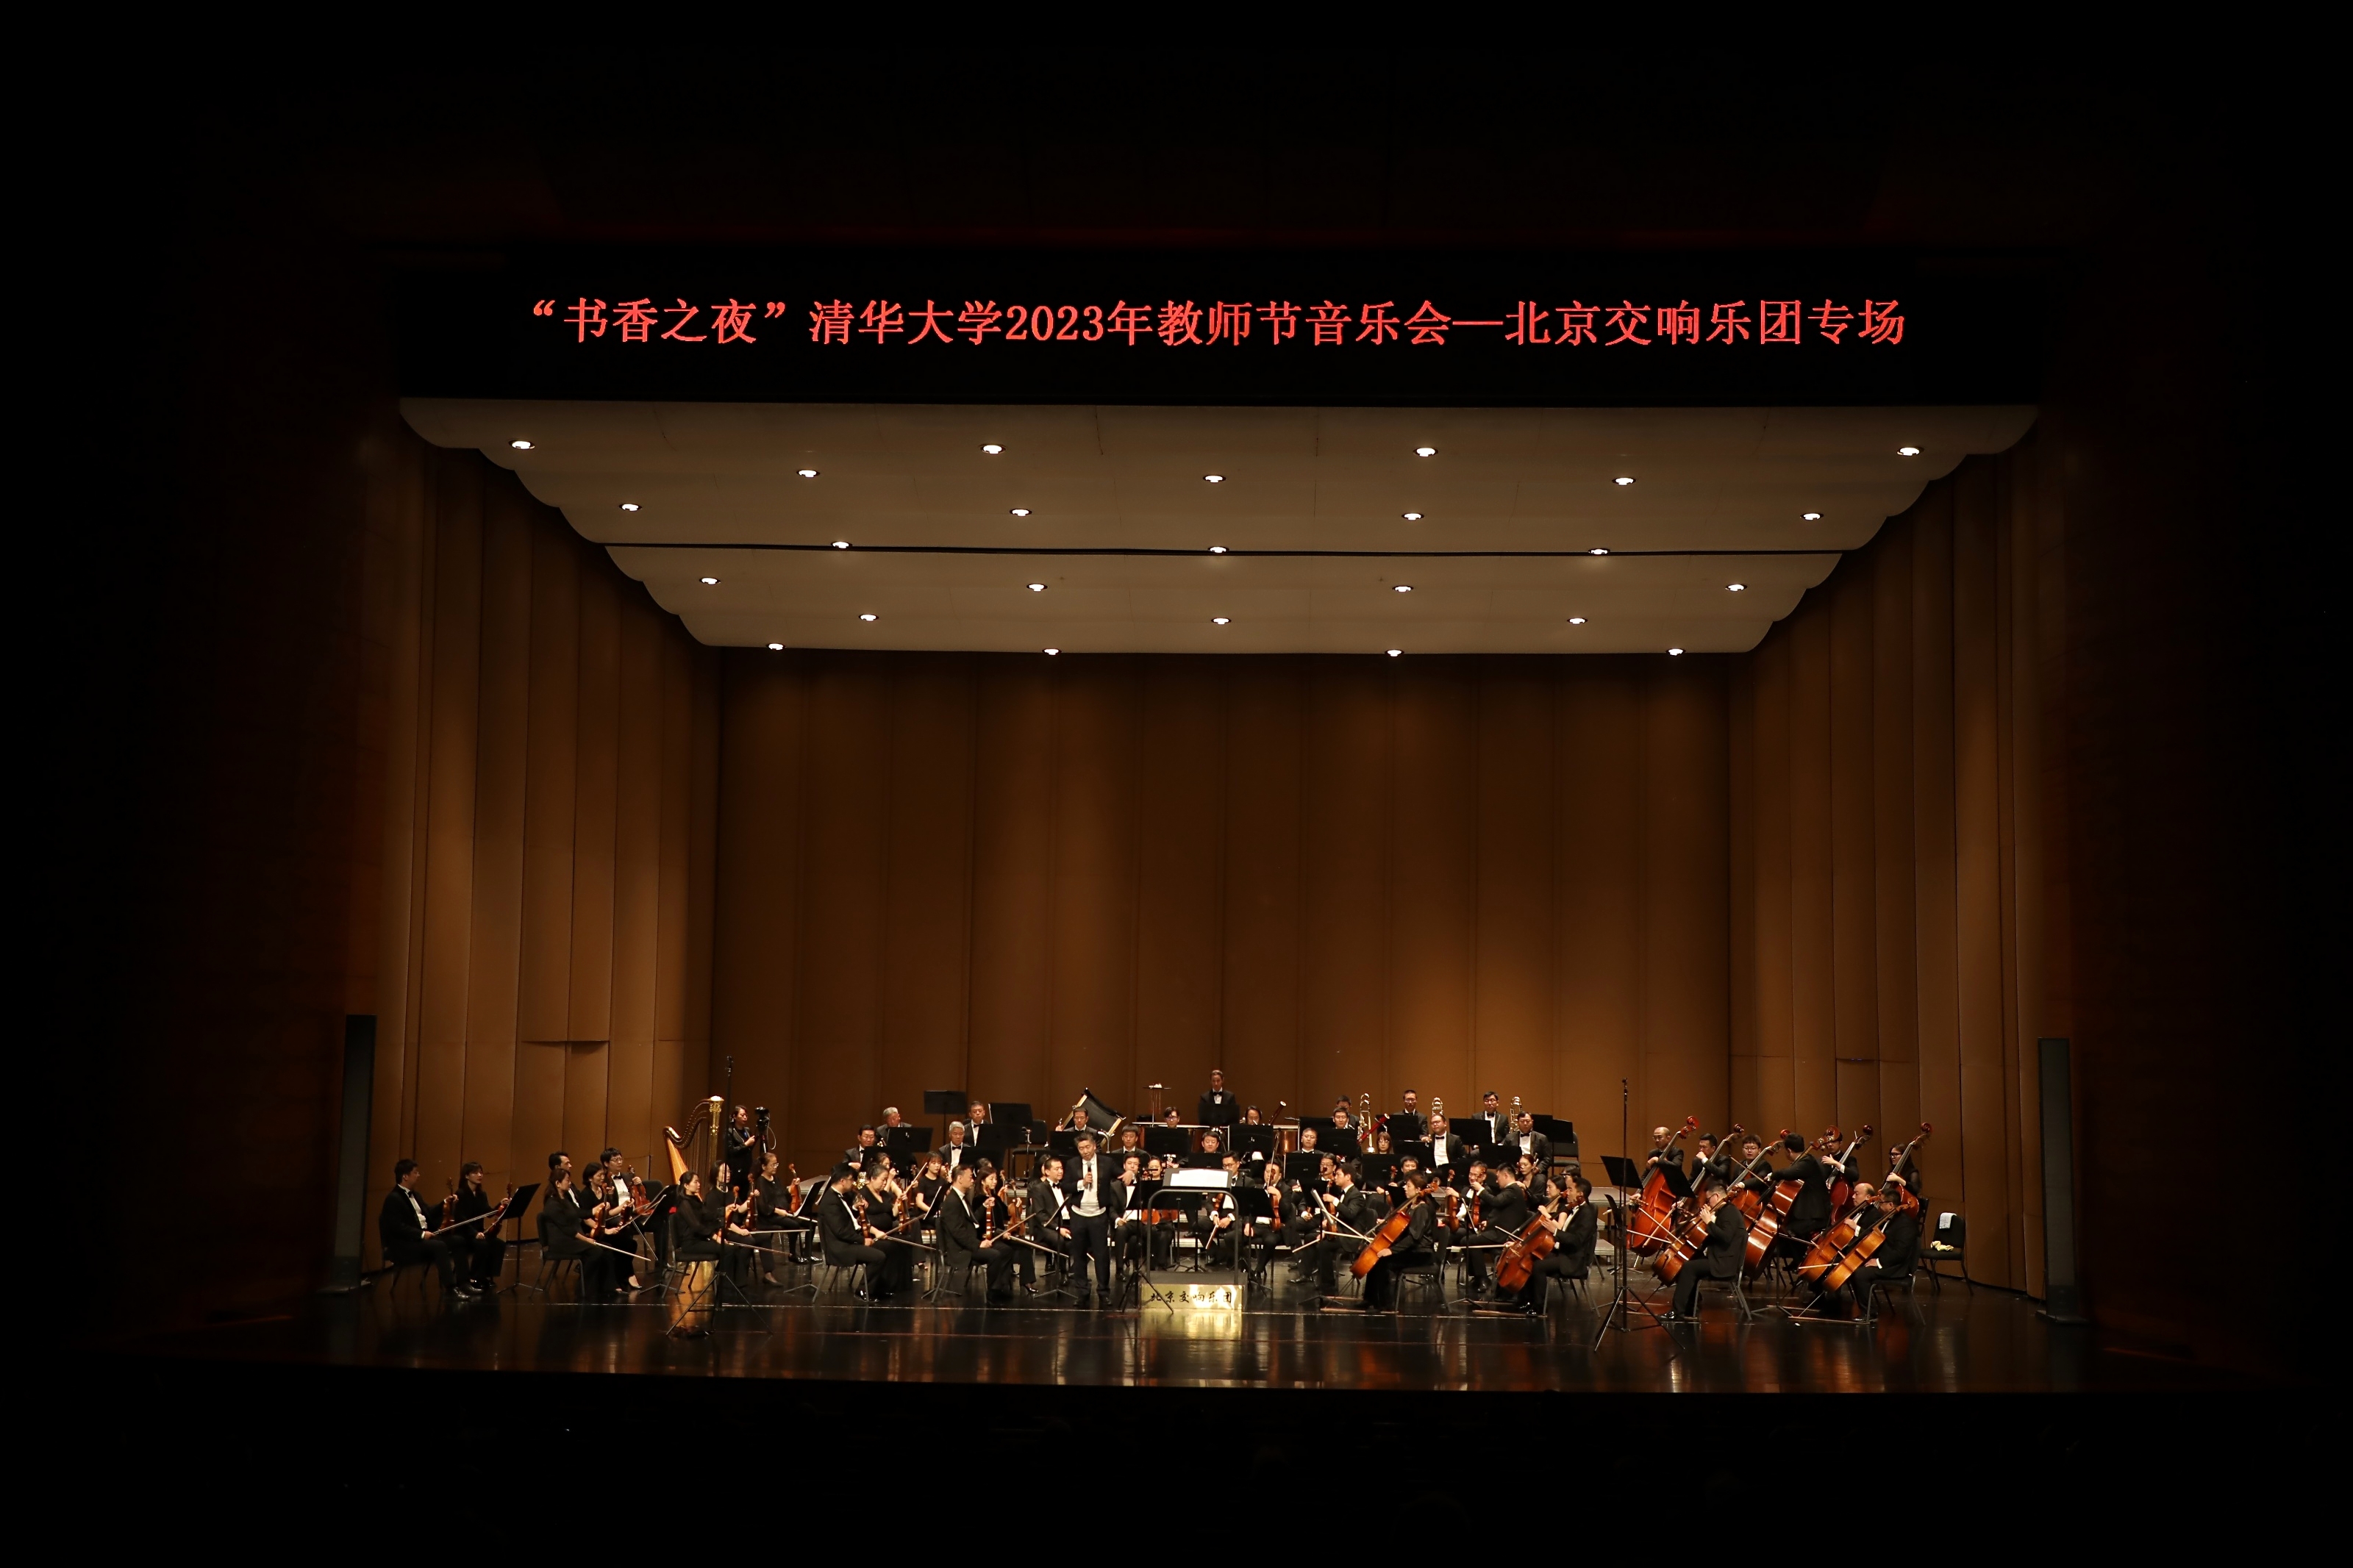 20230910-教师节专场音乐会-艺教中心-演出现场2.JPG